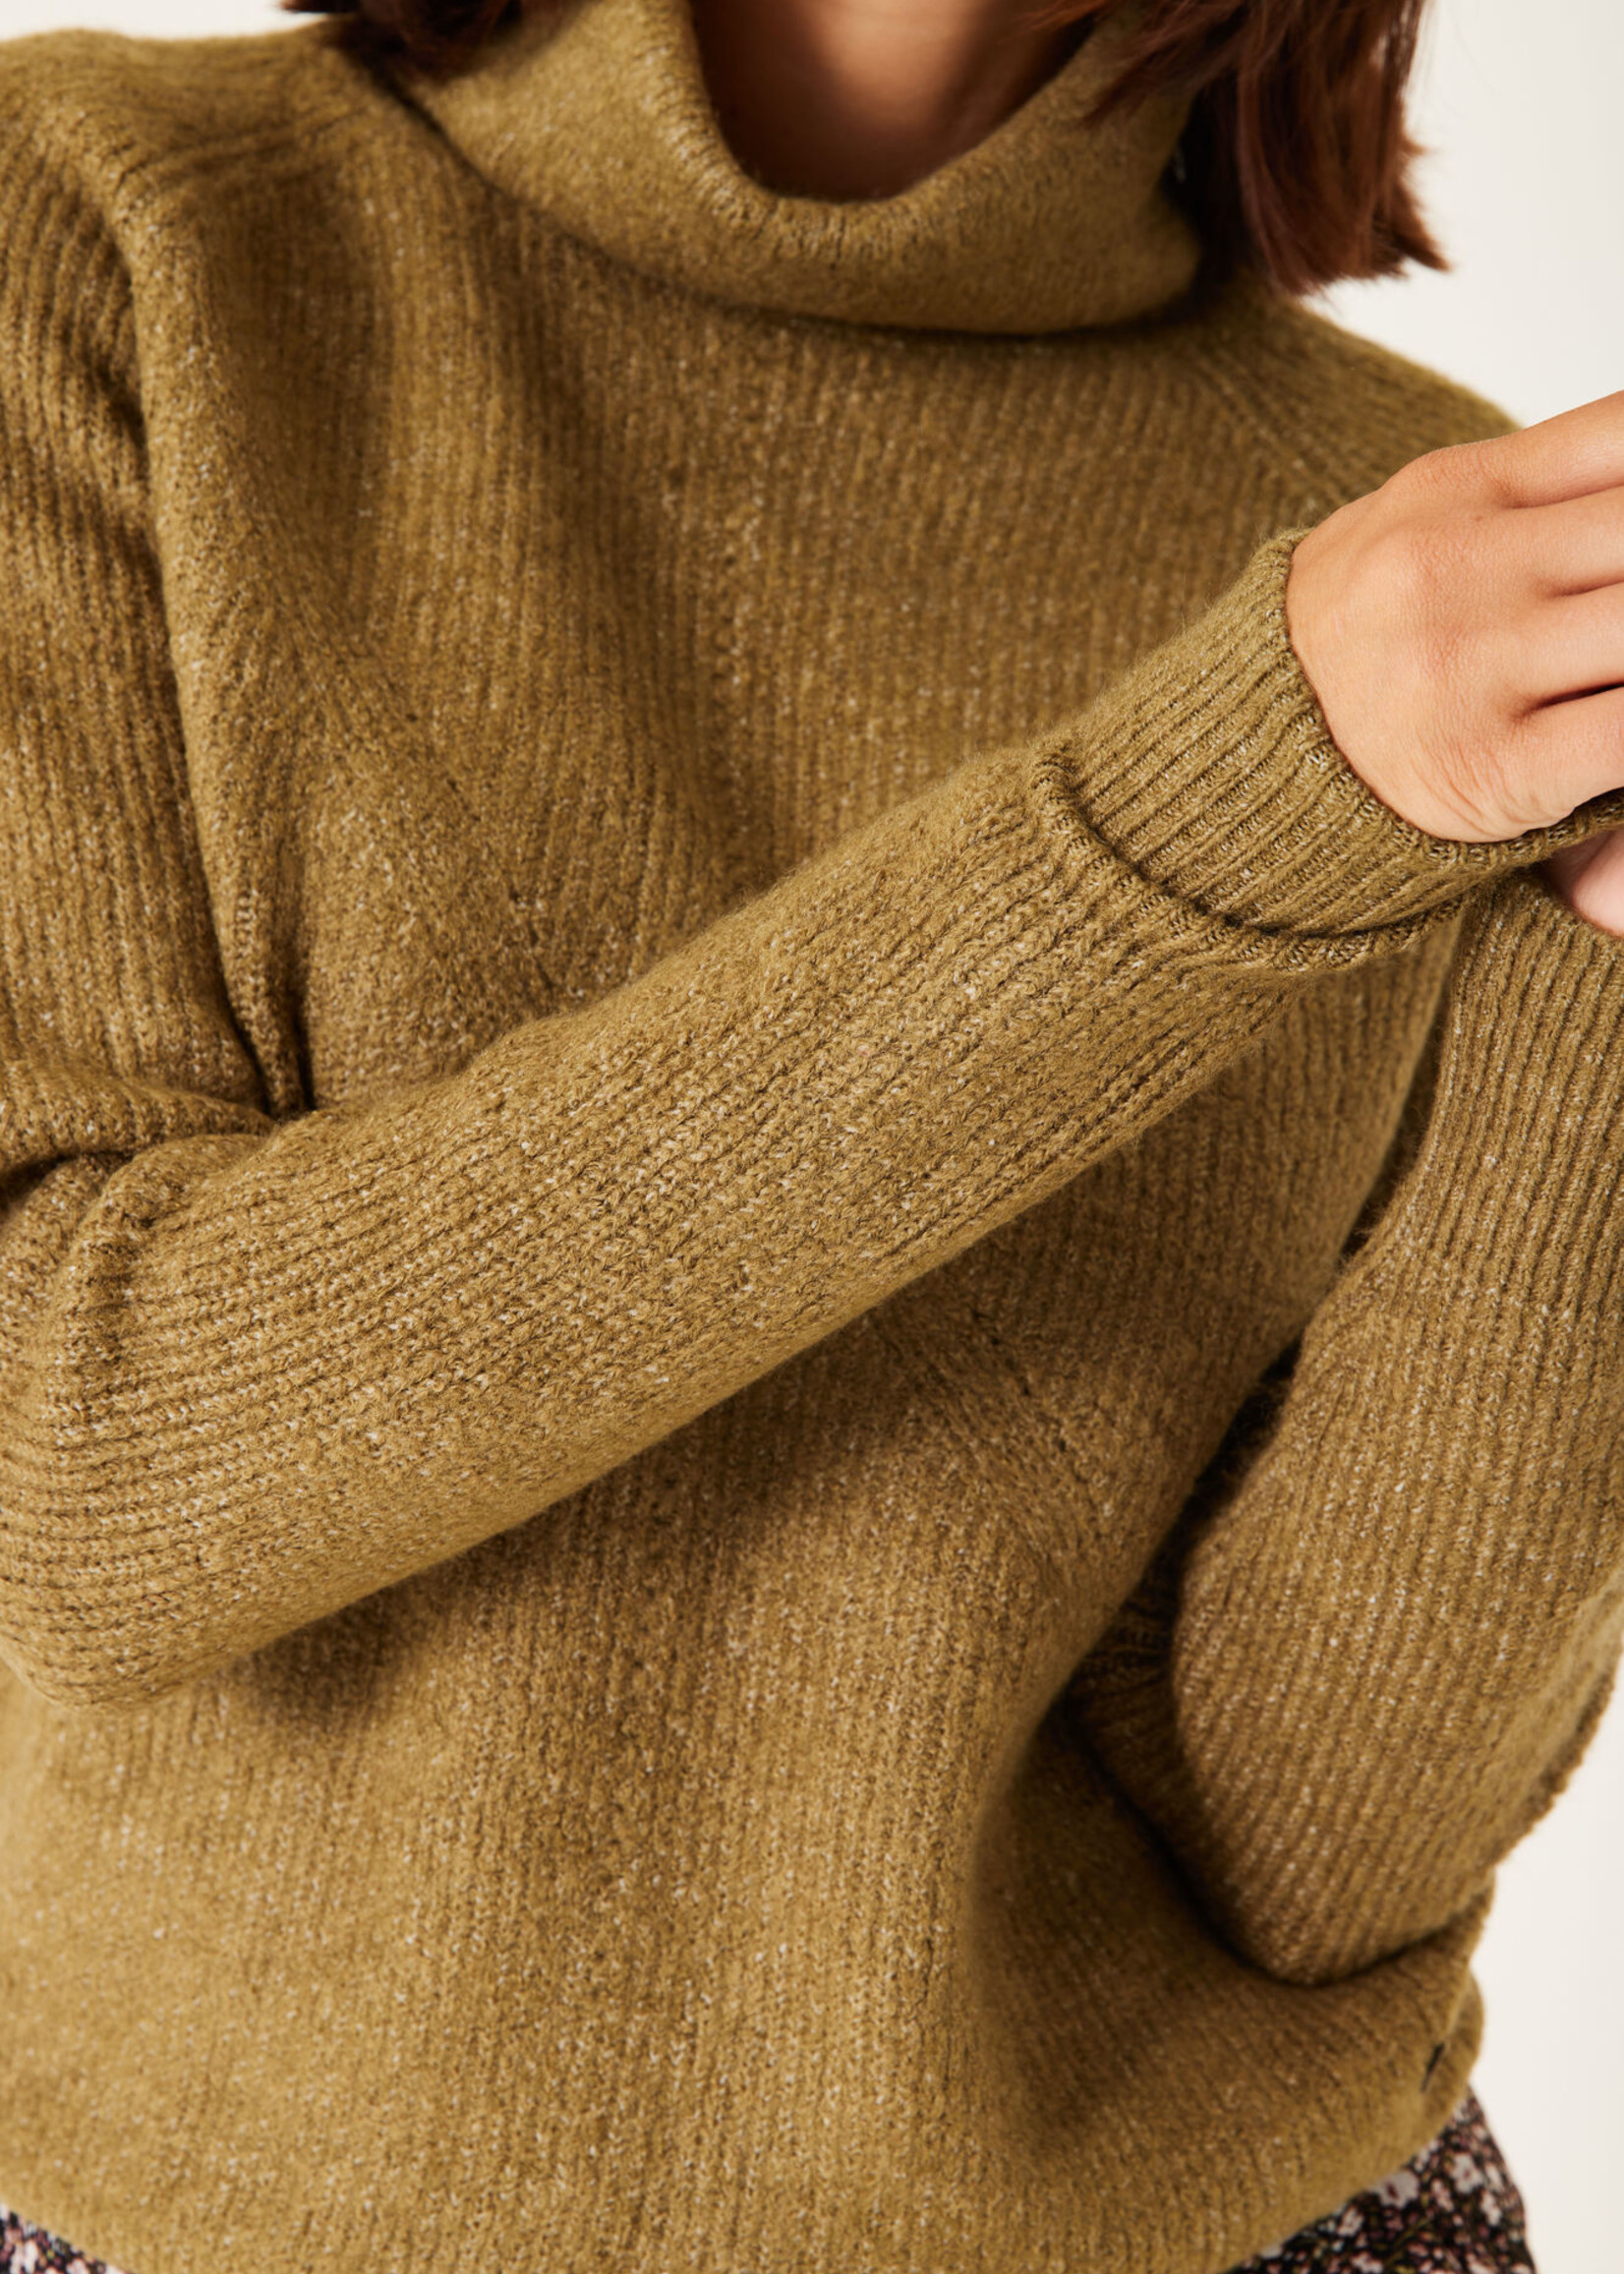 Garcia Olive Knit Turtleneck Sweater